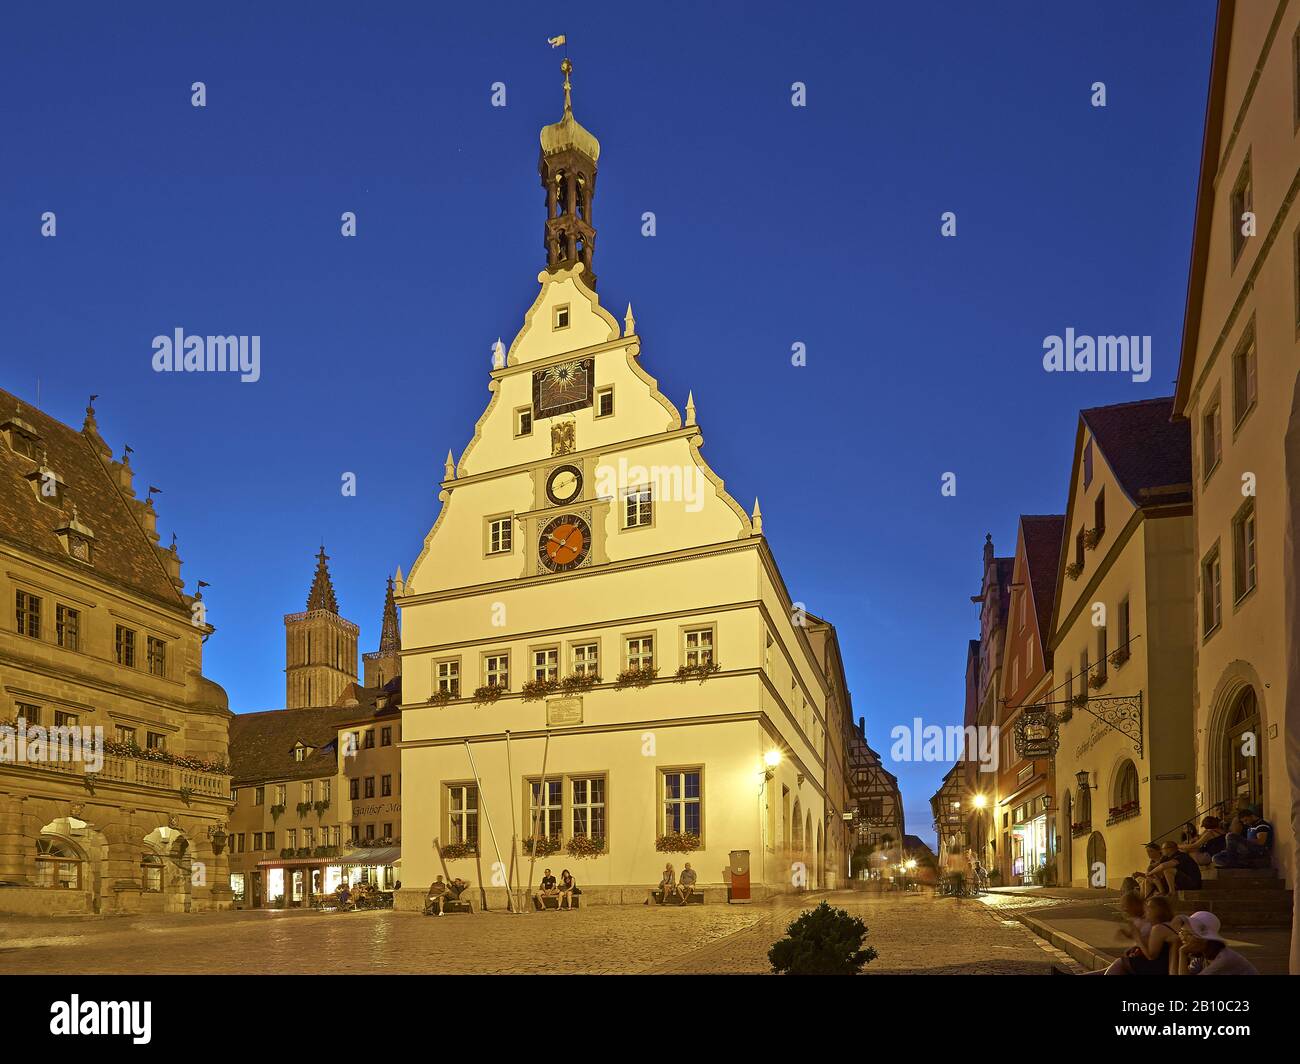 Ratstrinkstube am Marktplatz, Rothenburg ob der Tauber, Mittelfranken, Bayern, Deutschland Stockfoto